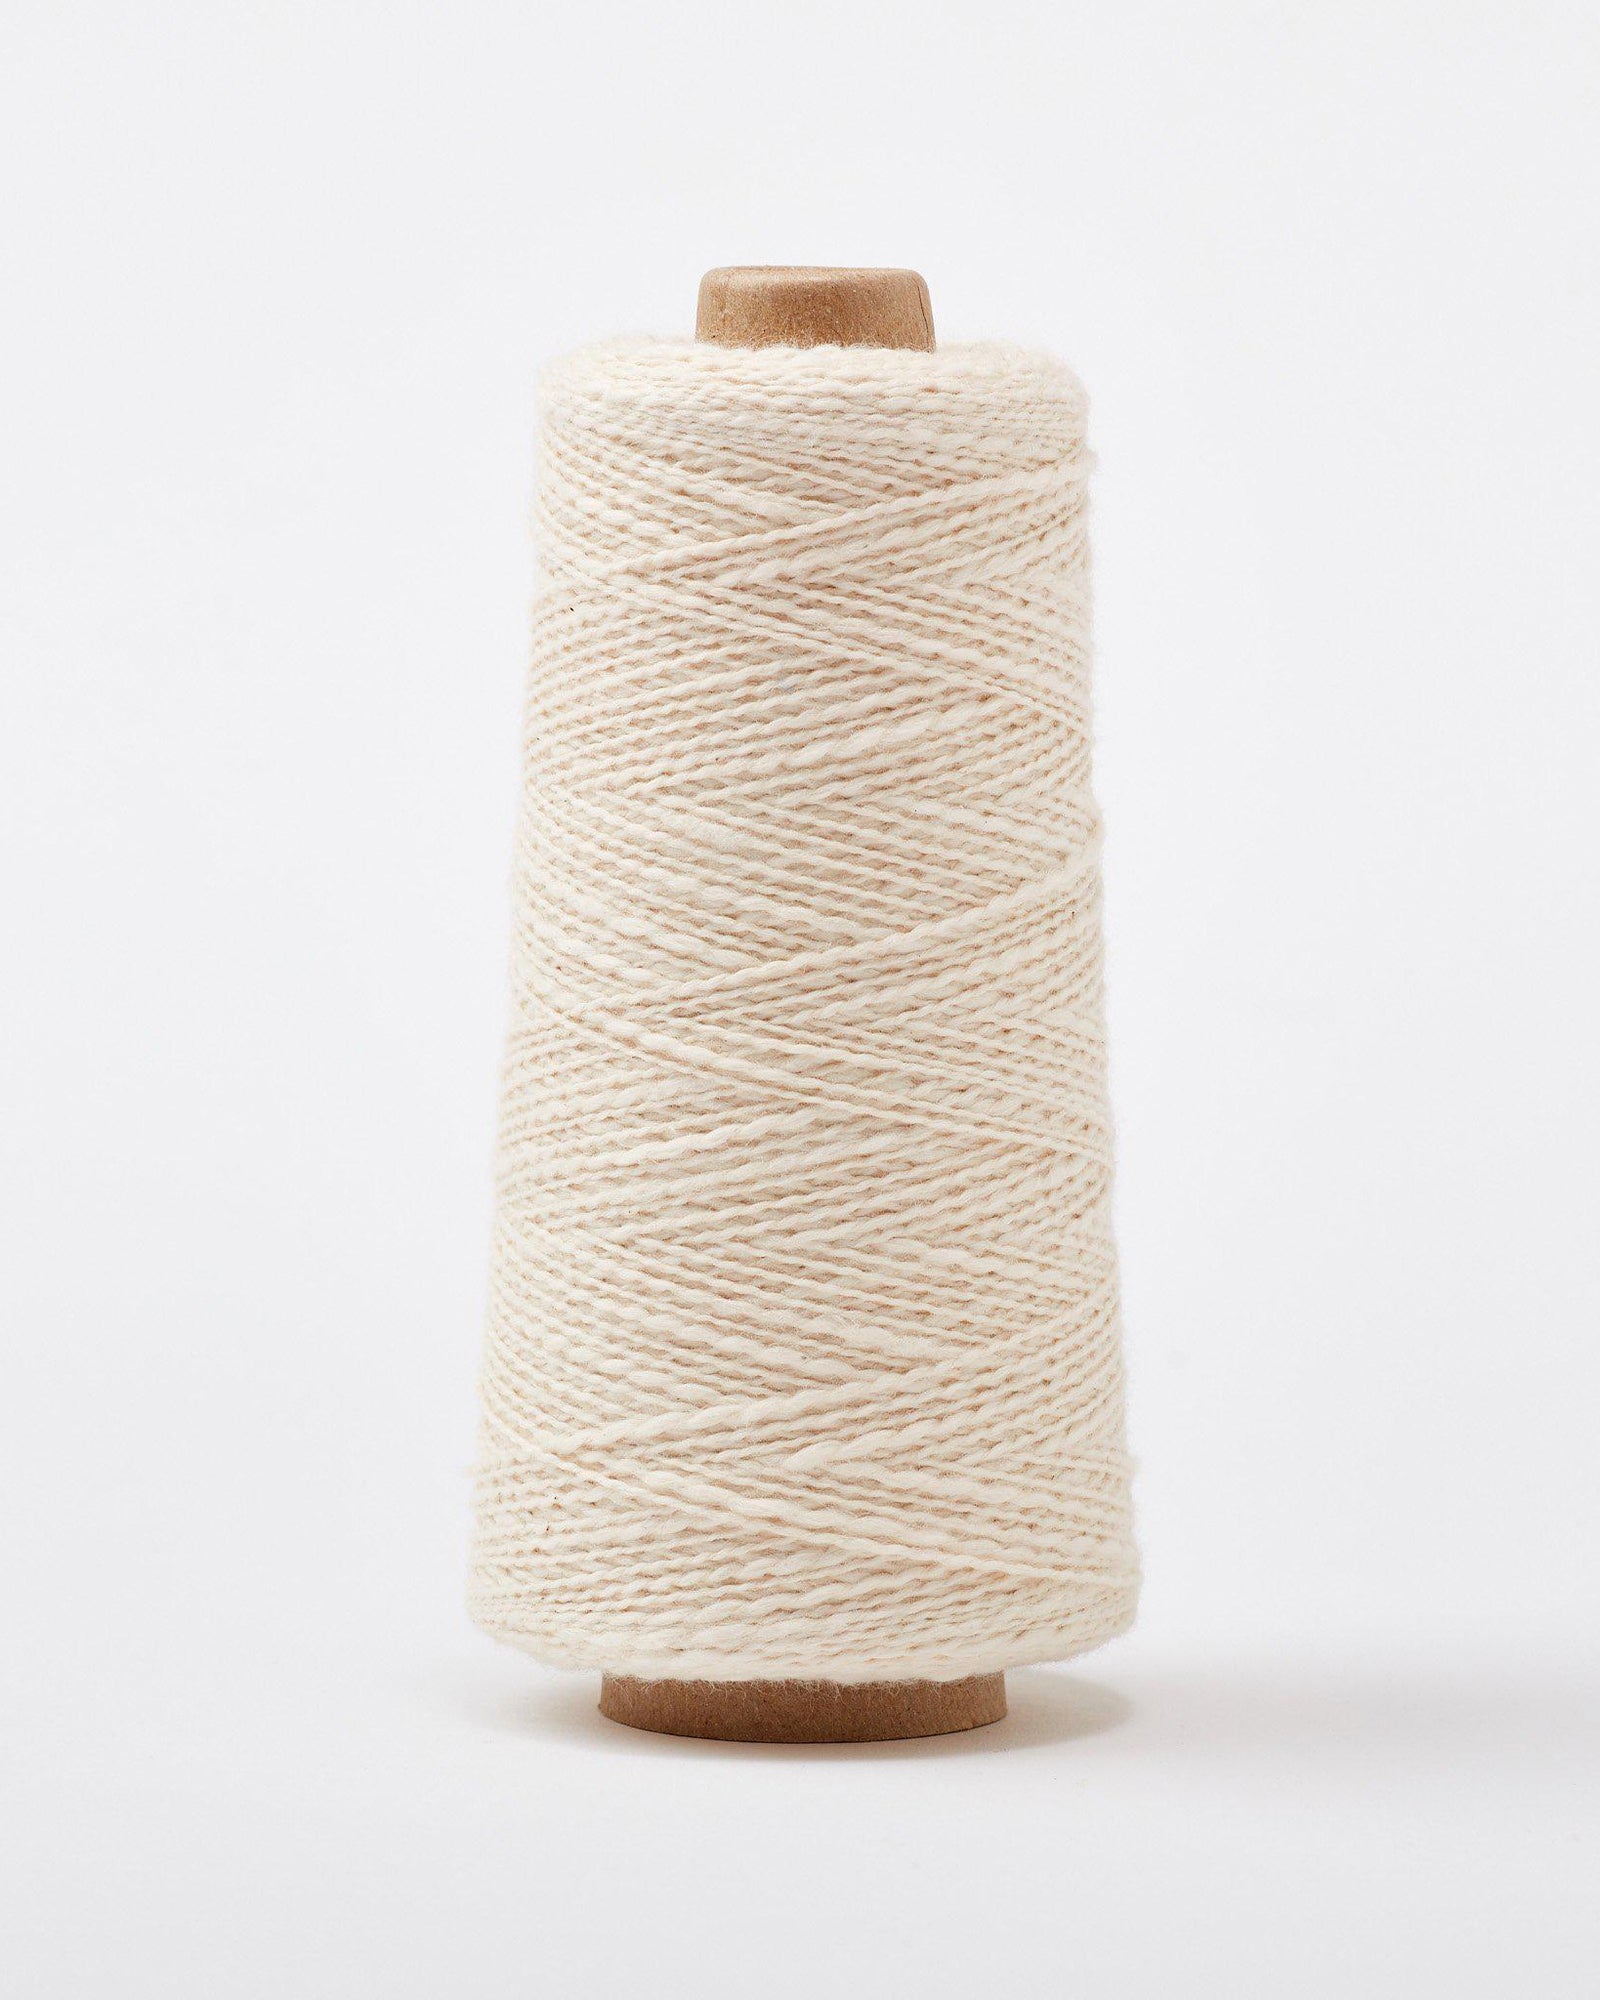 Cotton Weaving Yarn - Gist Yarn